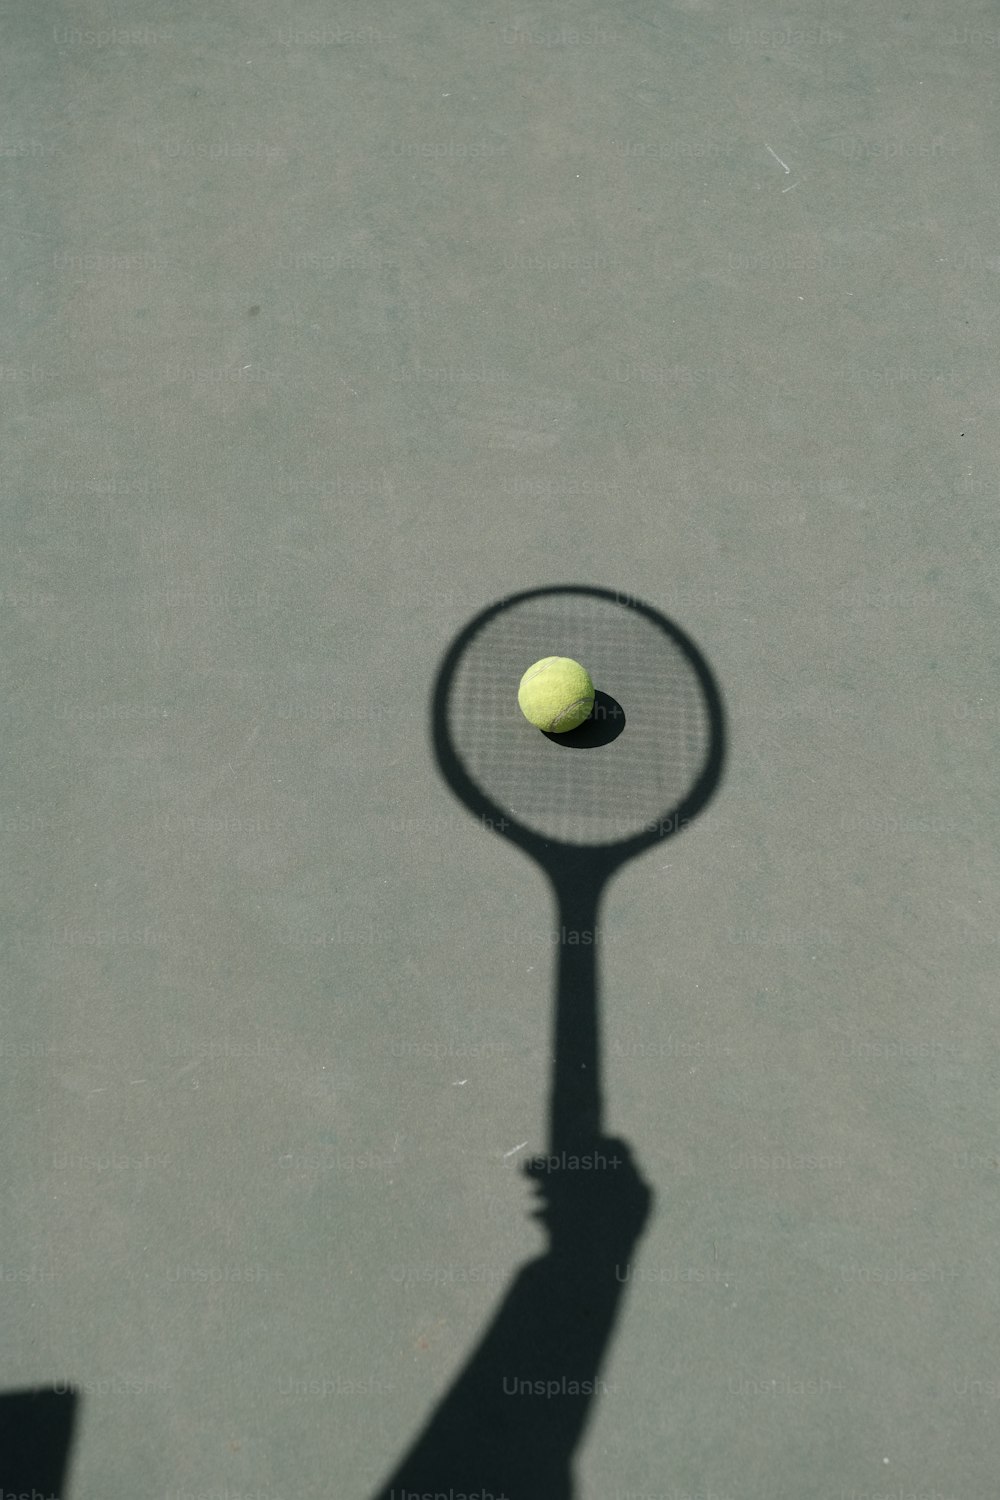 la sombra de una persona sosteniendo una raqueta de tenis y una pelota de tenis